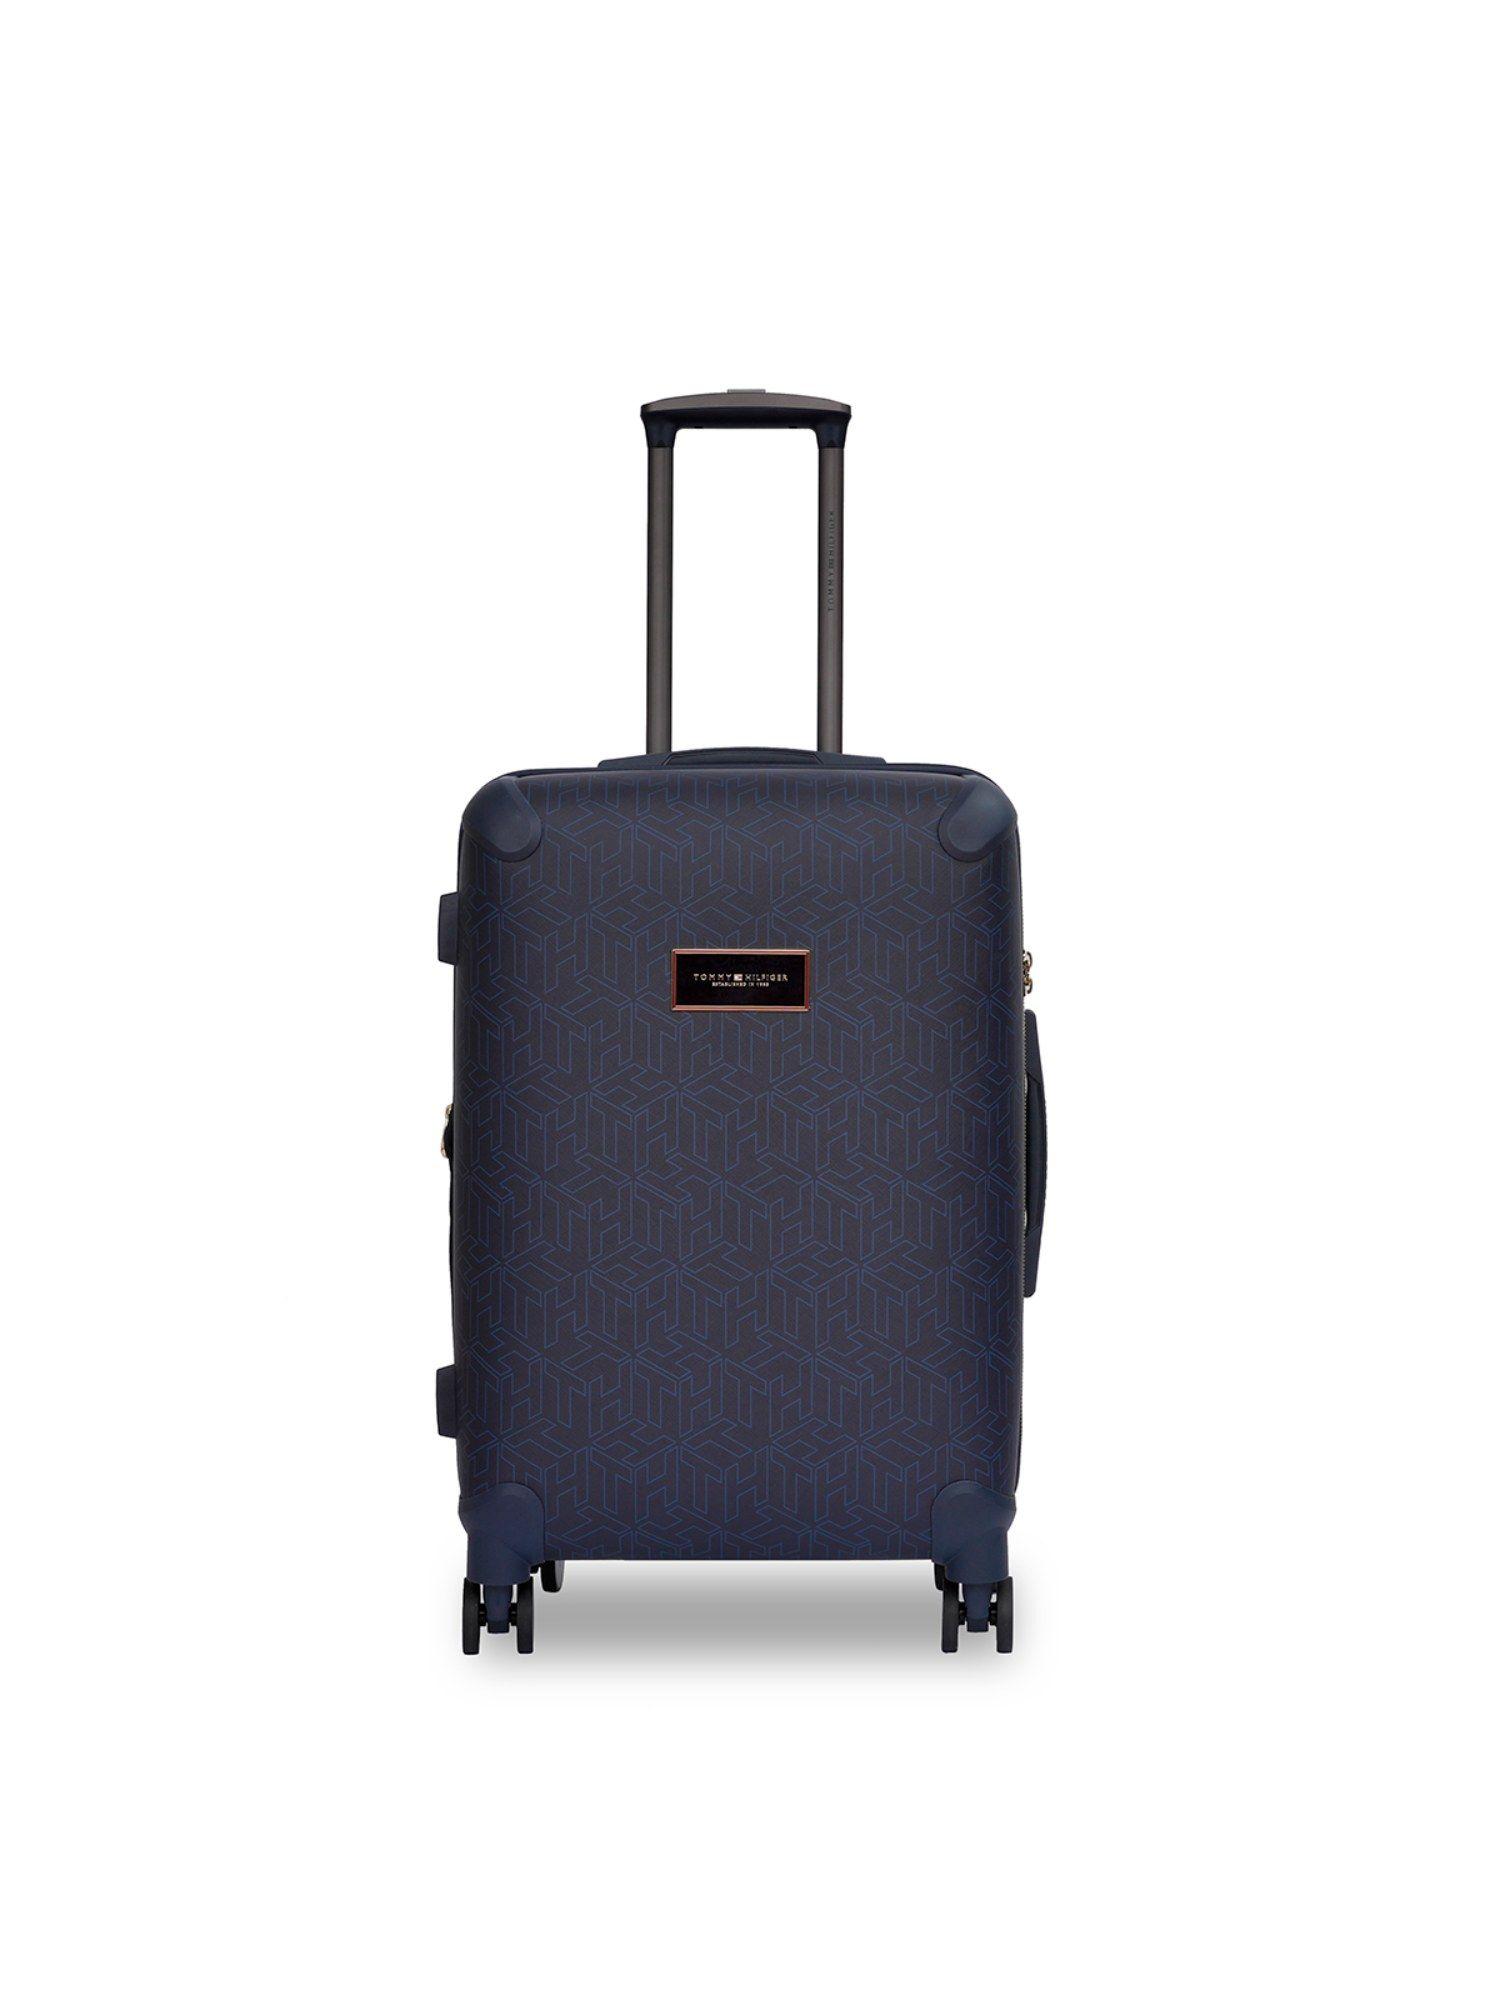 jazz unisex hard luggage - navy blue trolley bag